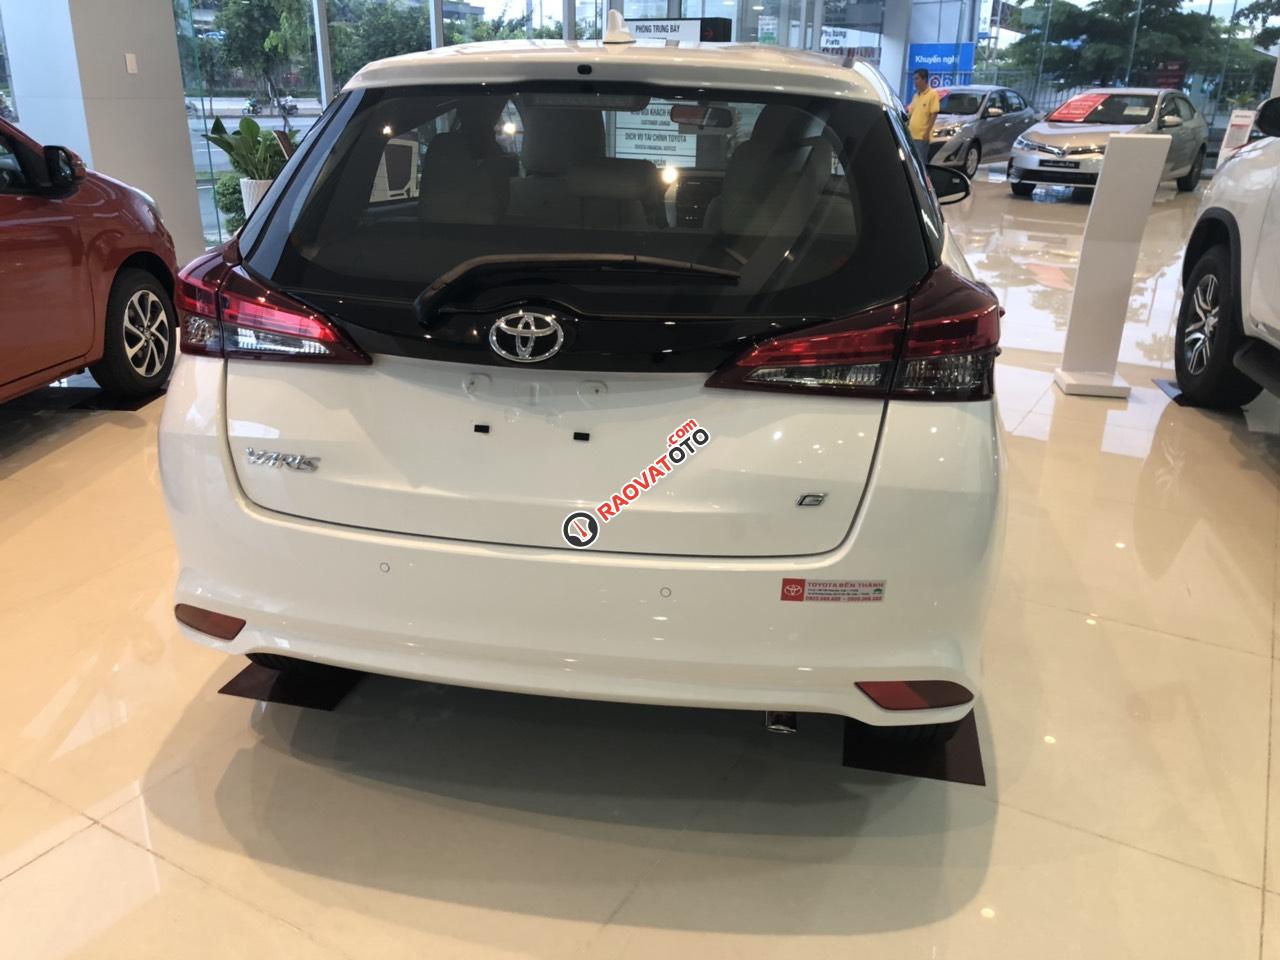 Bán Toyota Yaris 2019 giá tốt - khuyến mãi hấp dẫn - giao xe ngay - 0909 399 882-1